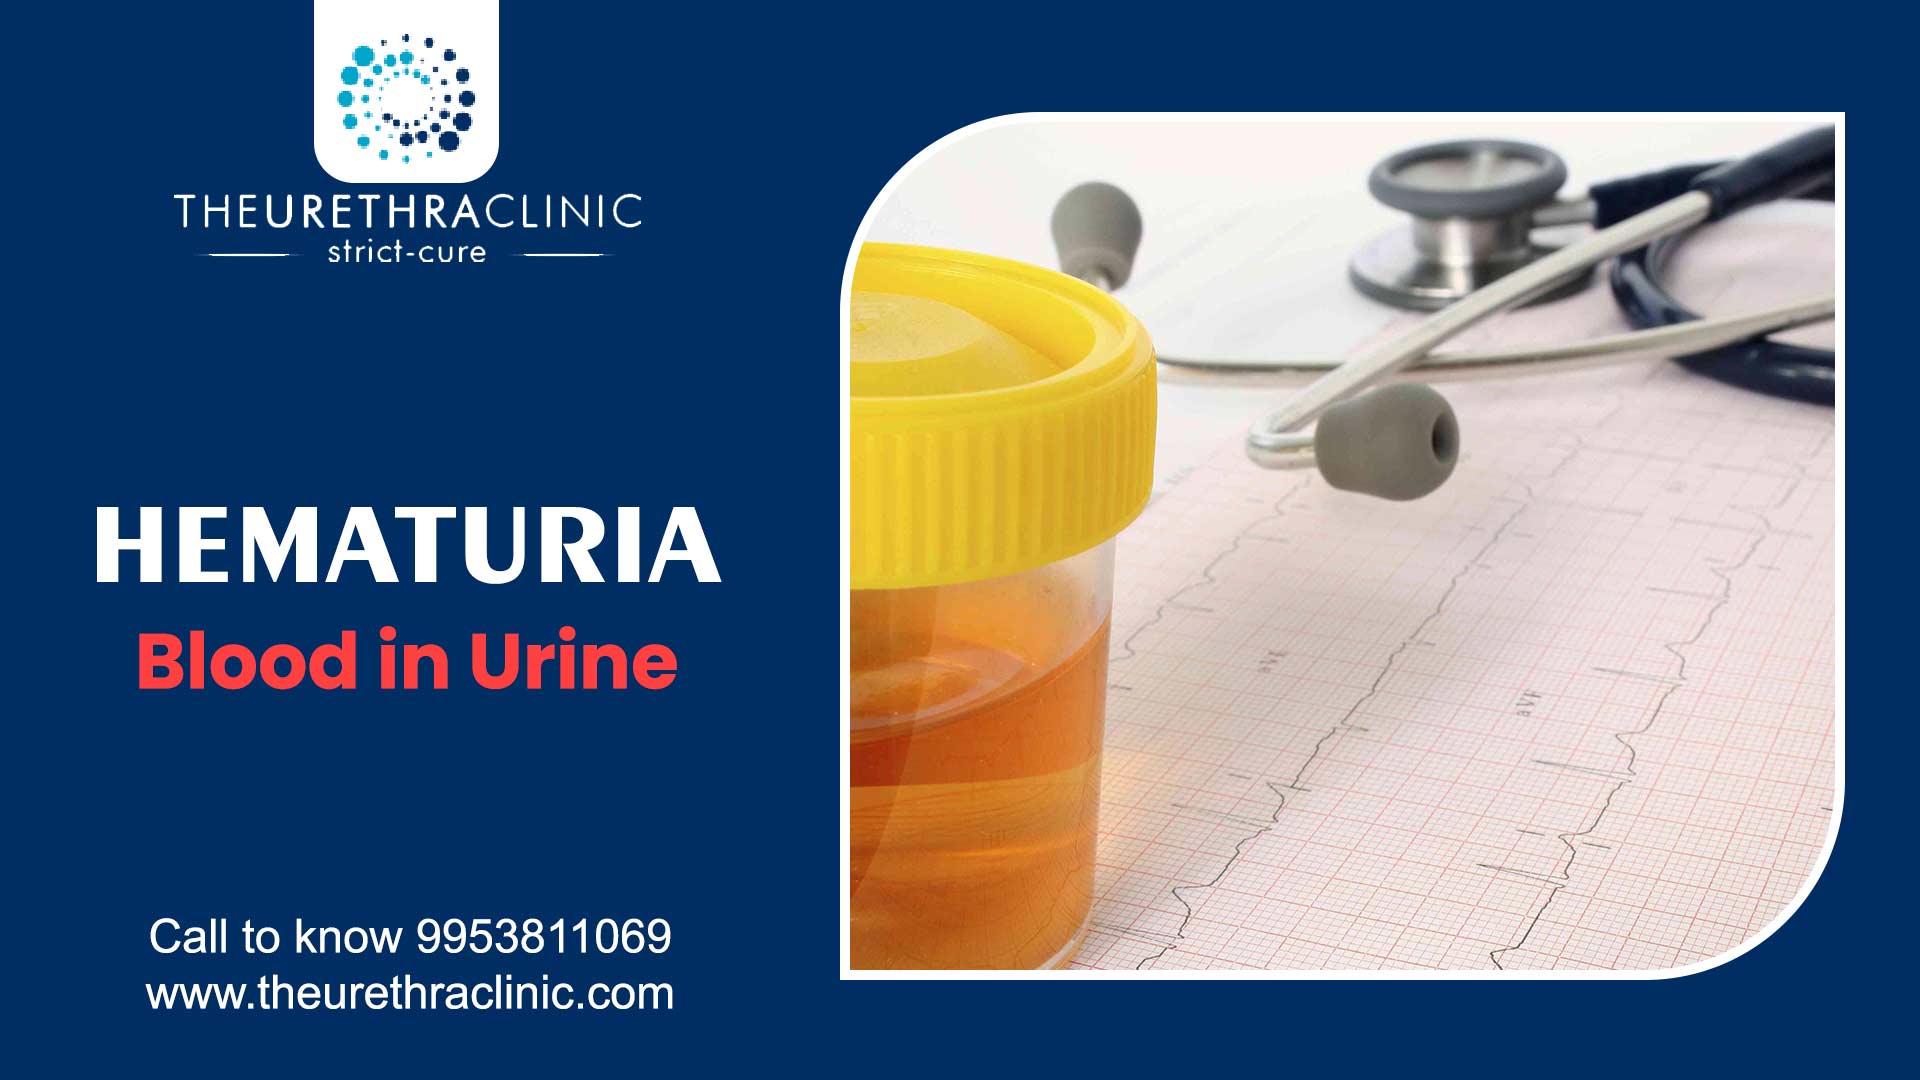 Hematuria Blood in Urine Causes, Symptoms & More